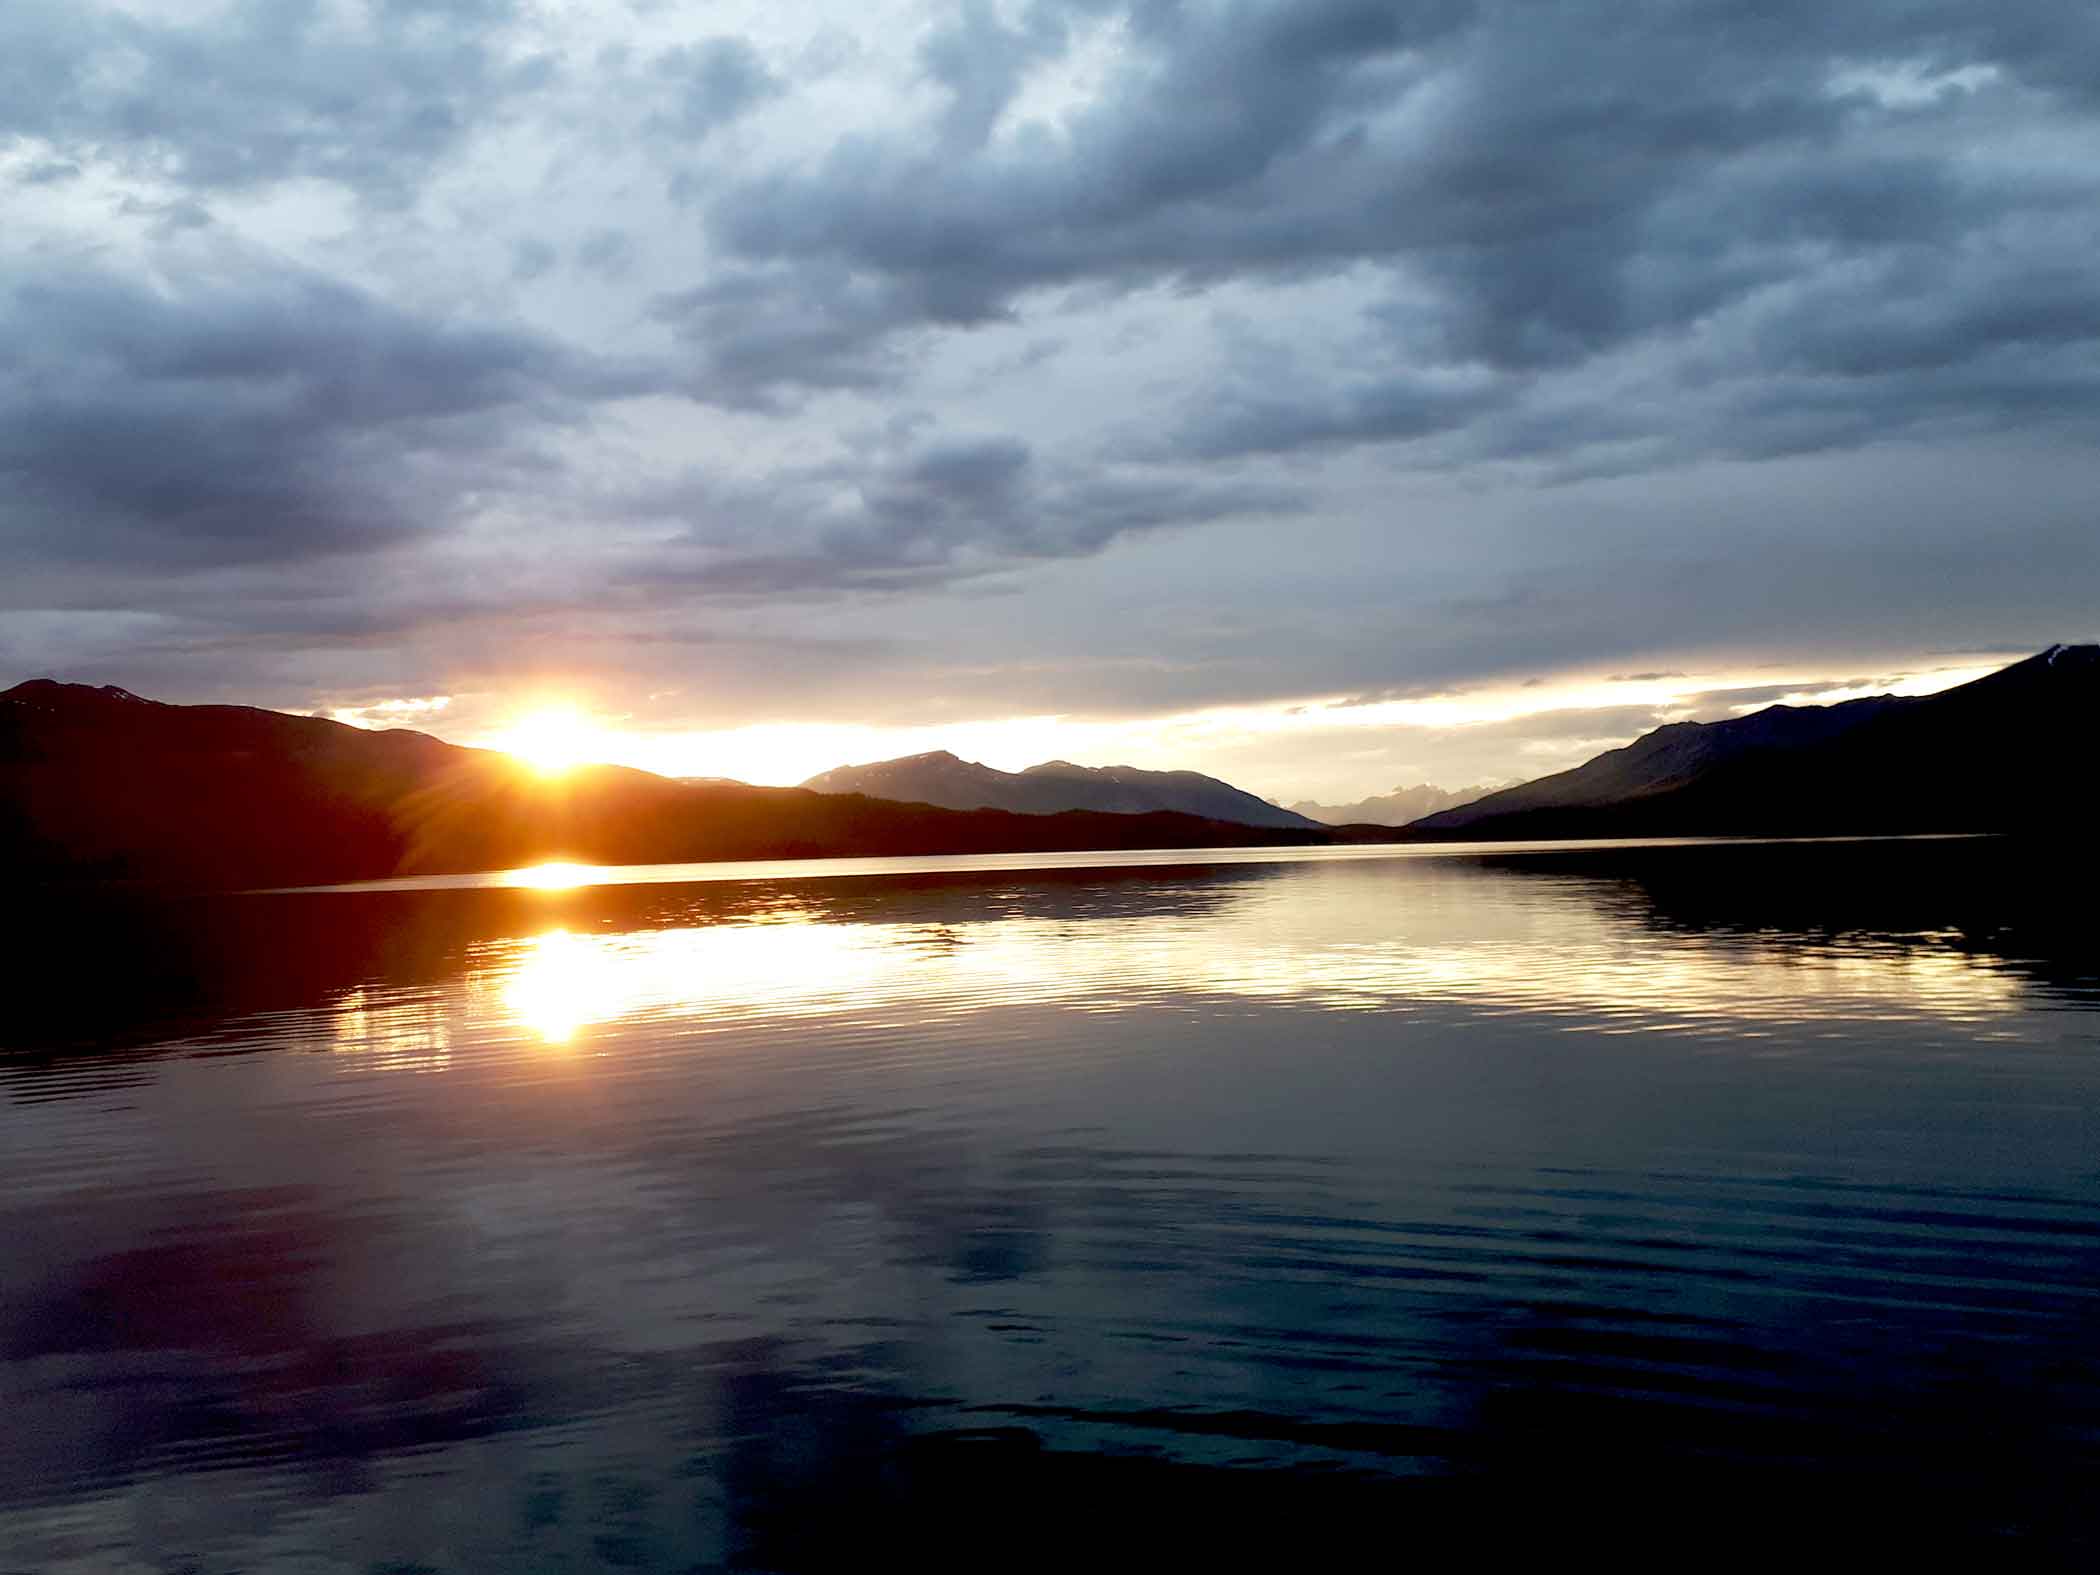 Sunset on Maligne Lake